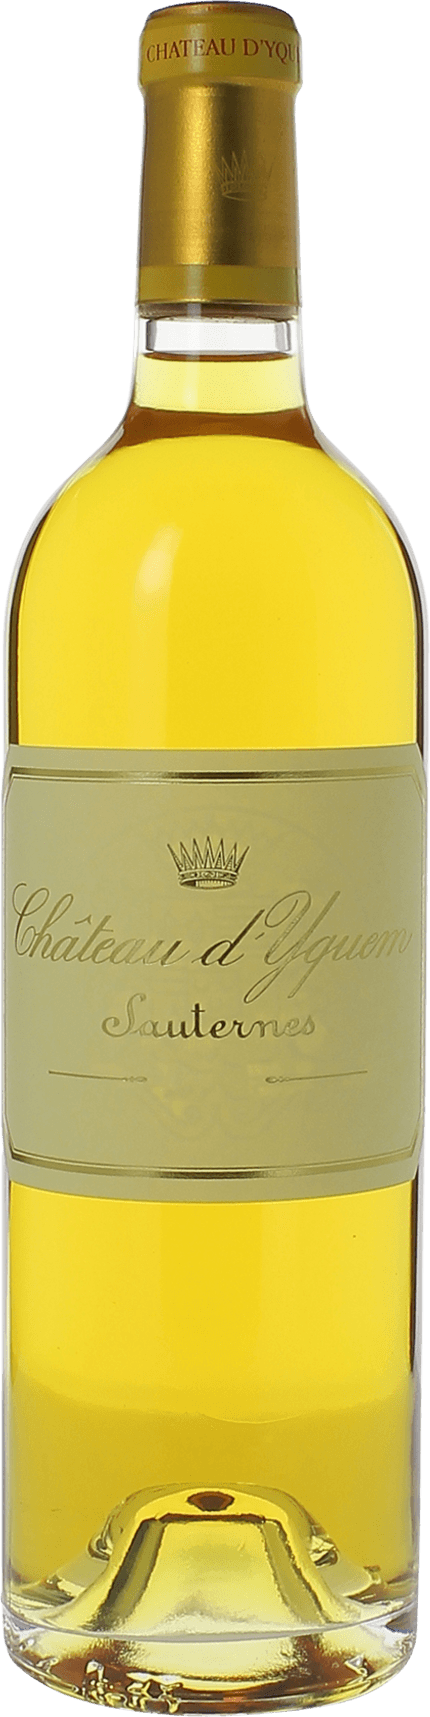 Yquem 1993 1er Grand cru class Sauternes, Bordeaux blanc